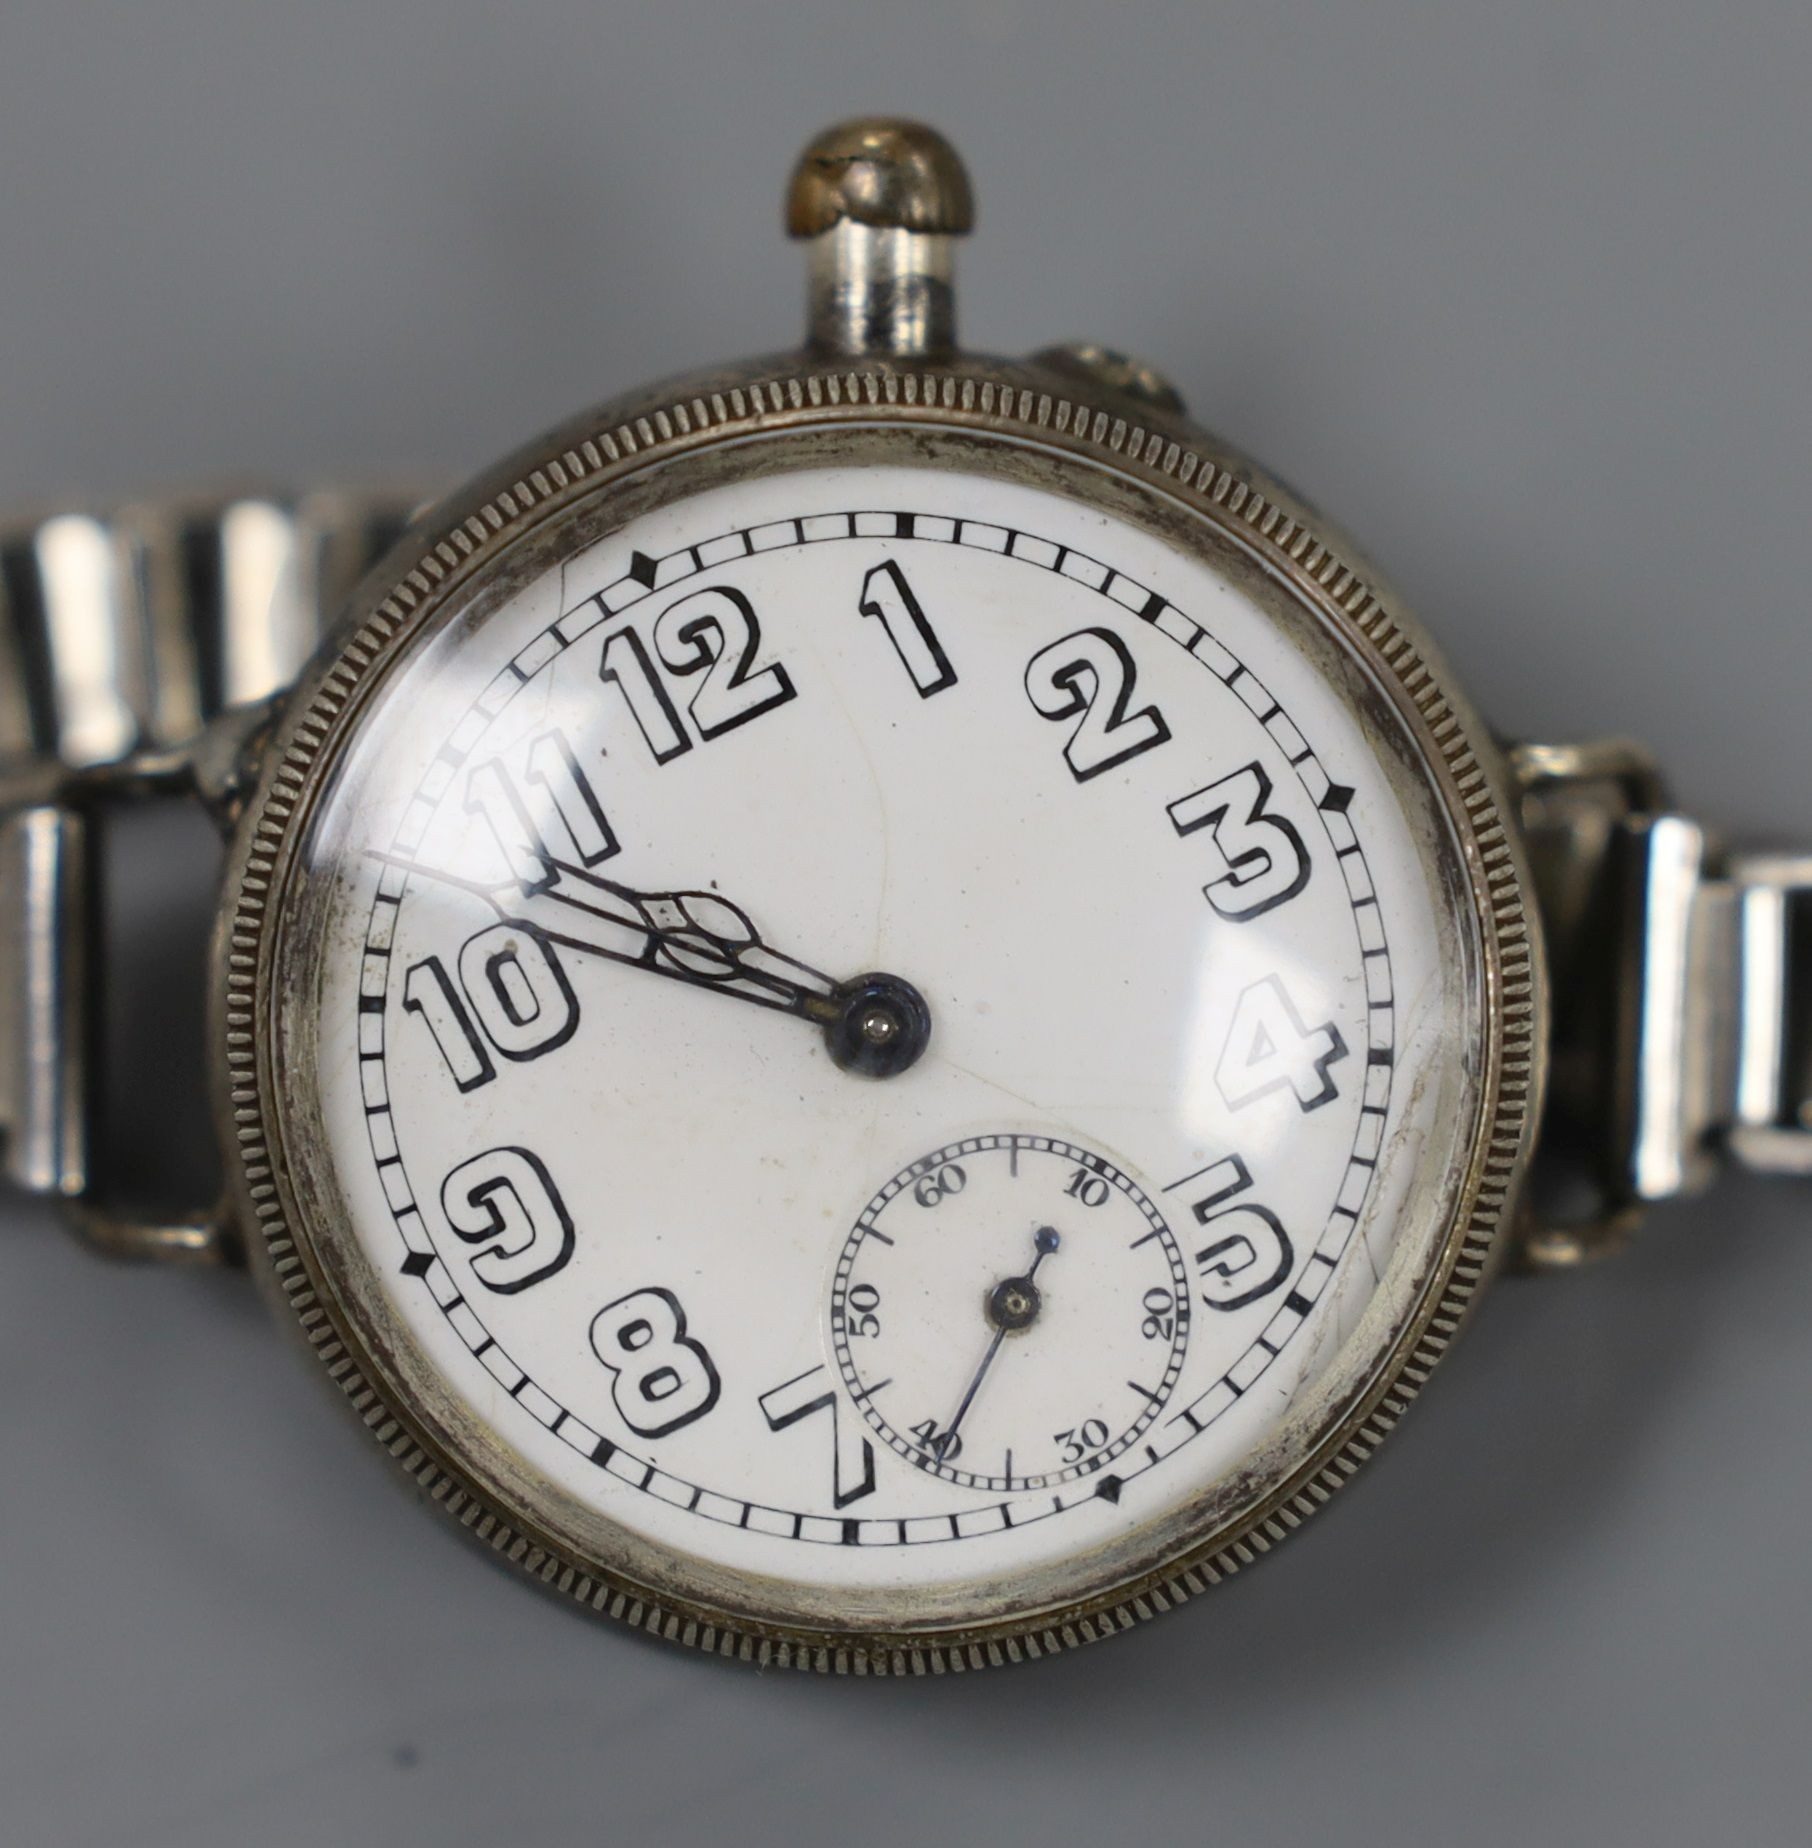 A gentleman's early 20th century silver Borgel cased manual wind wrist watch, on a metal bracelet.